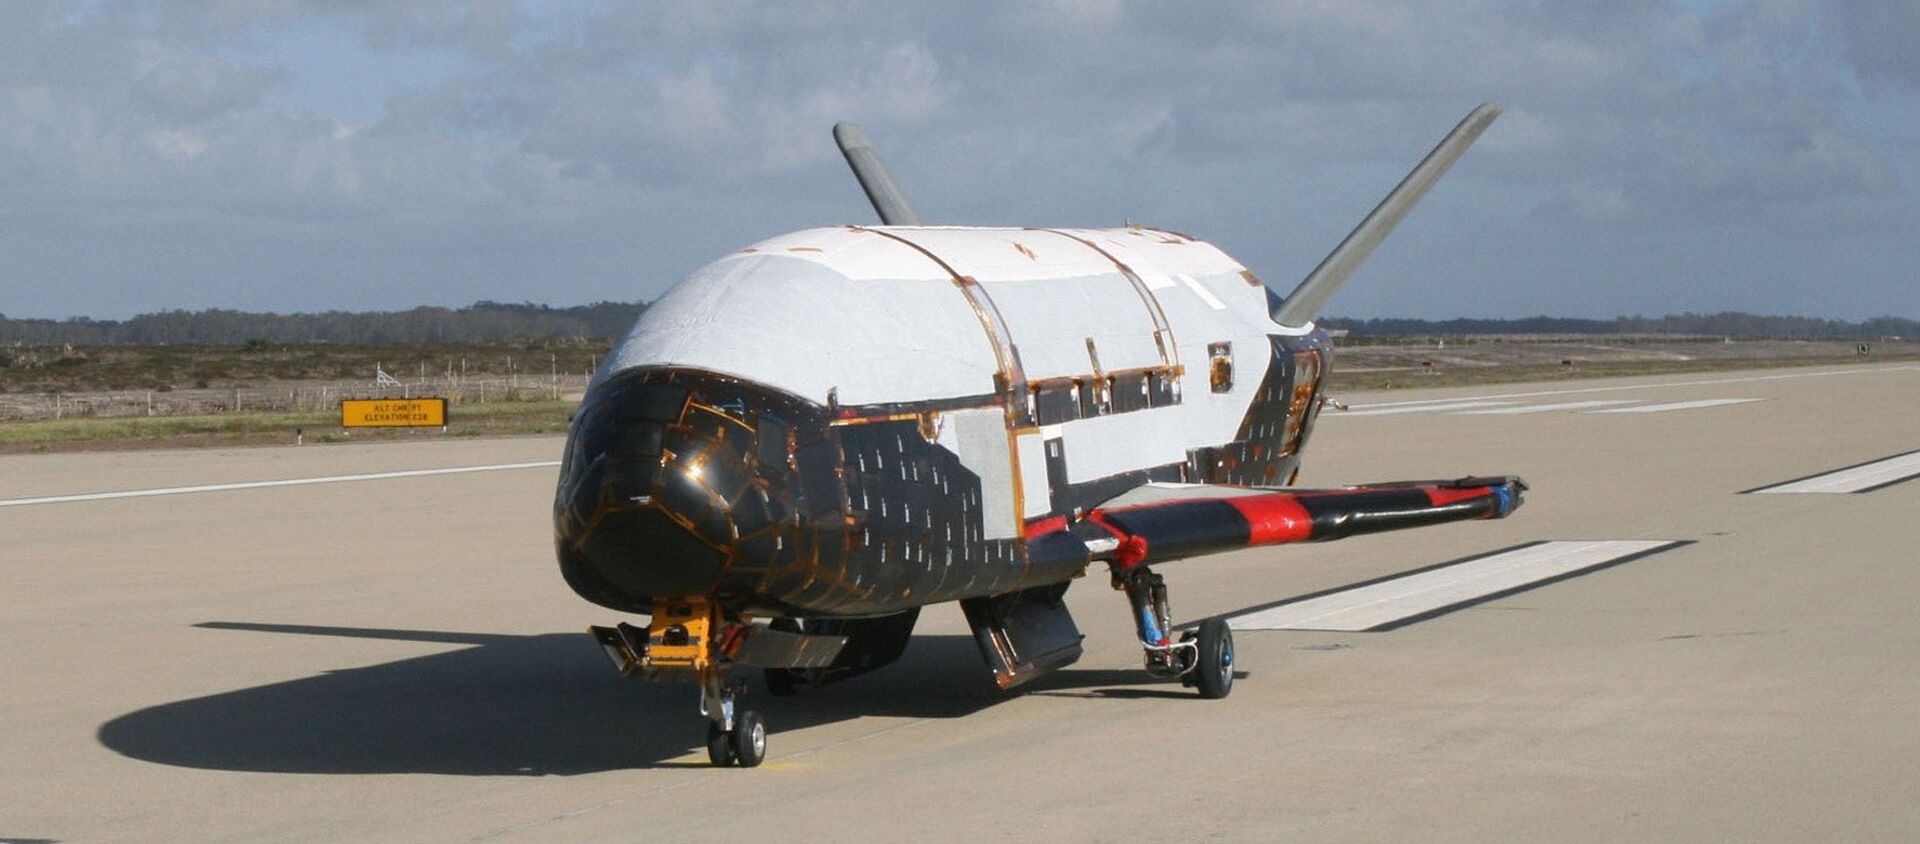 La aeronave espacial X-37B (imagen referencial) - Sputnik Mundo, 1920, 30.08.2019